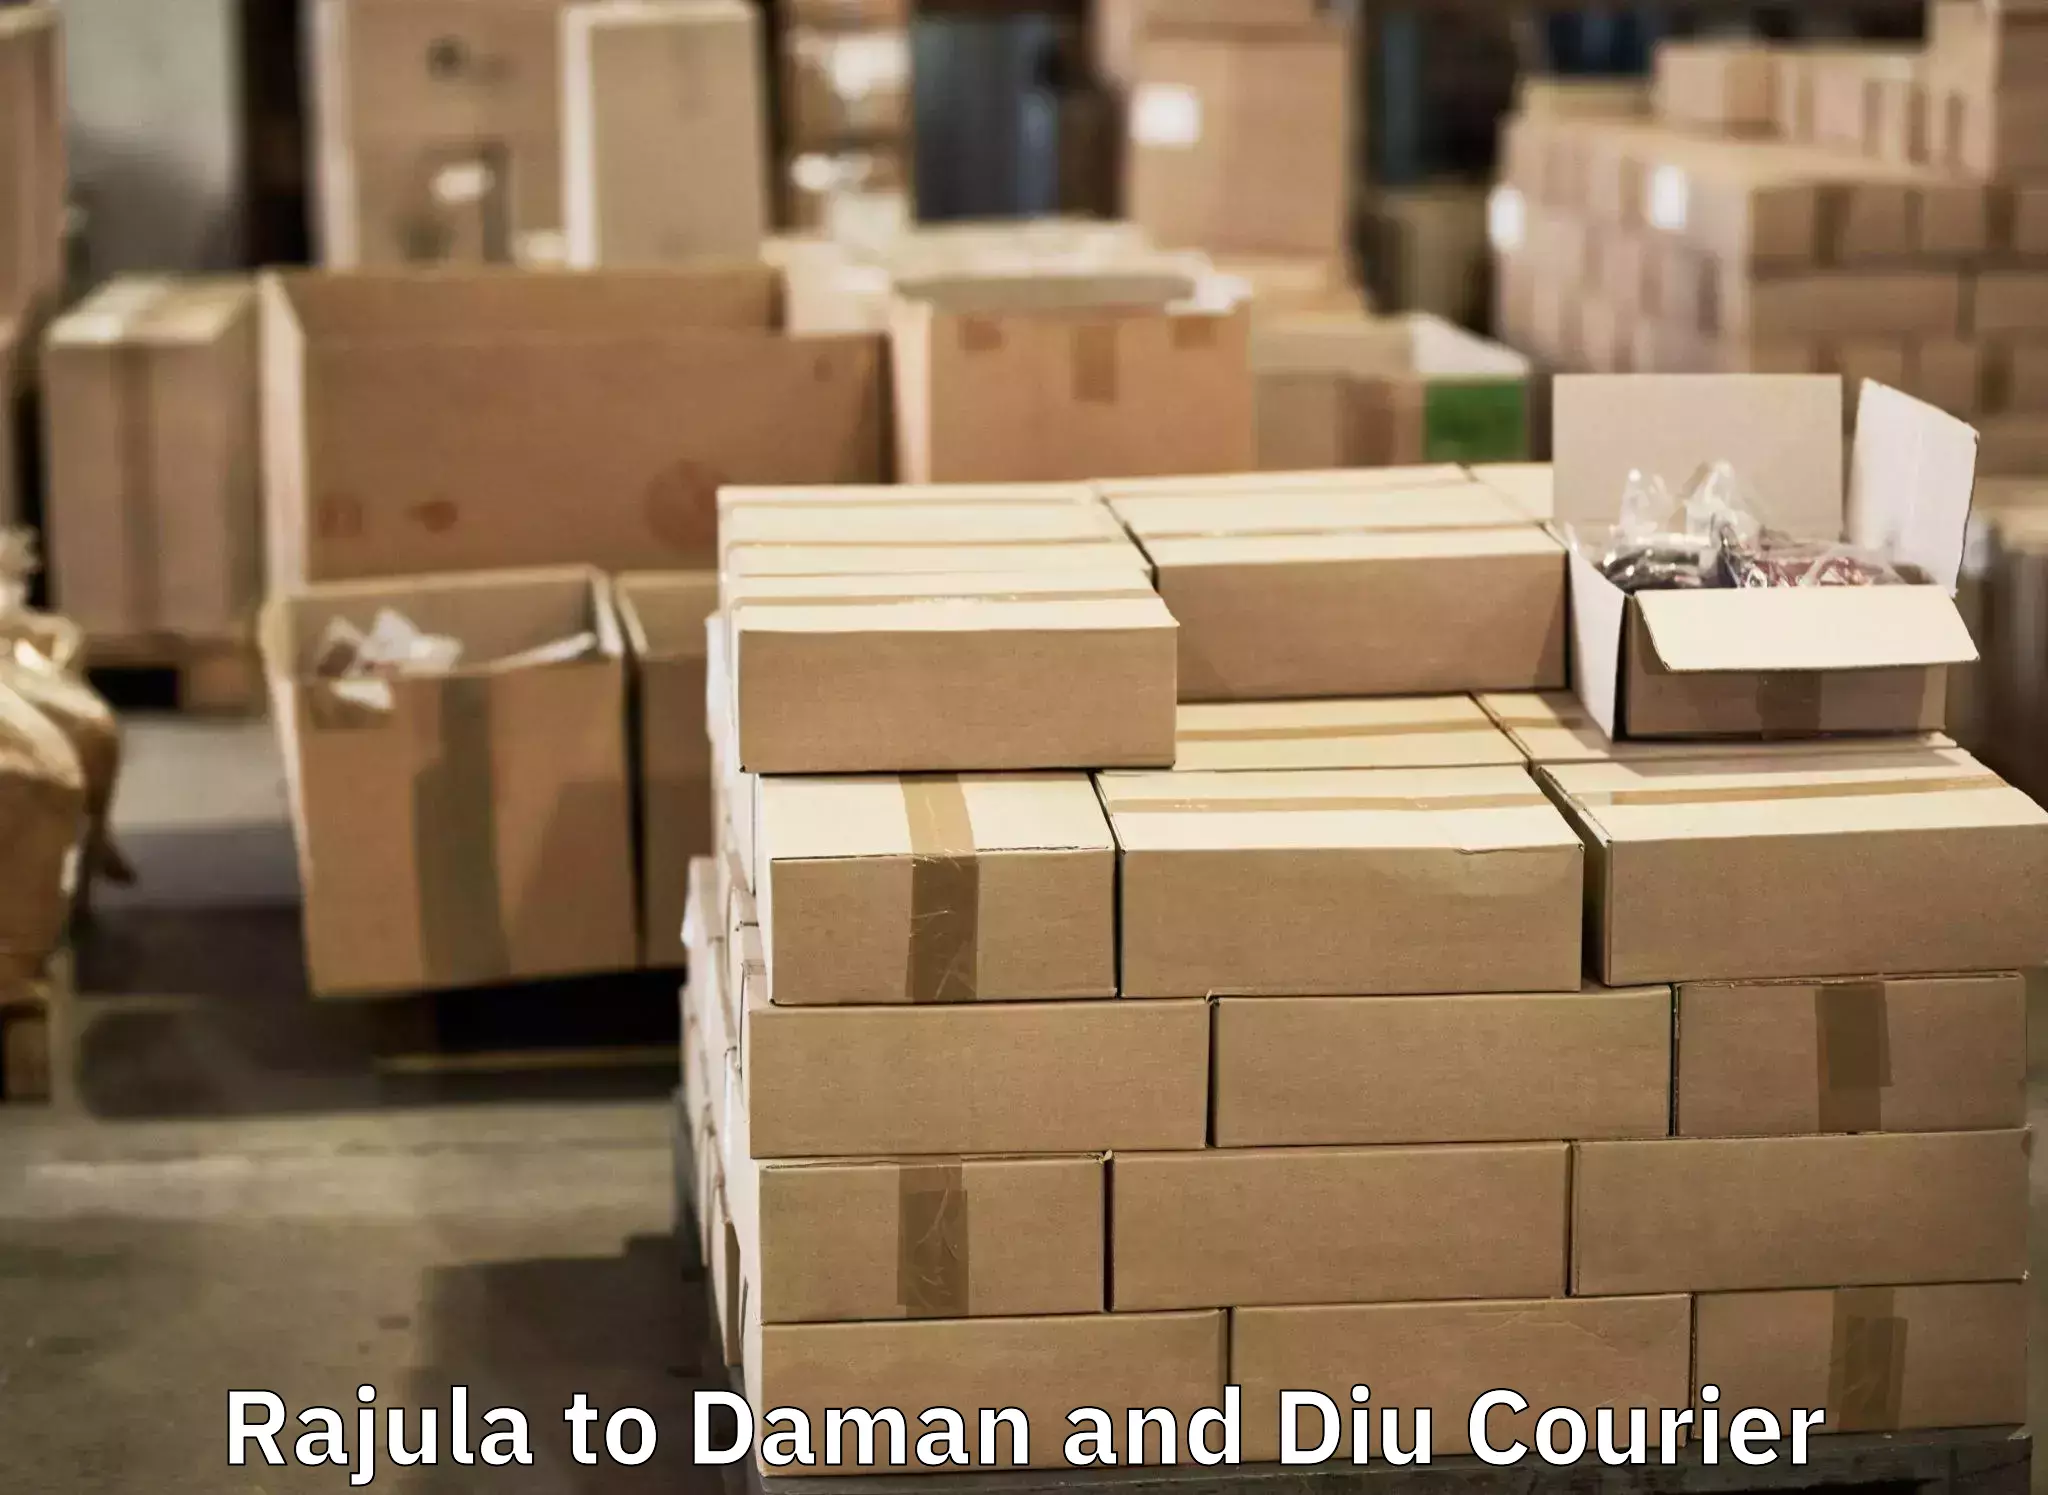 Online luggage shipping in Rajula to Diu